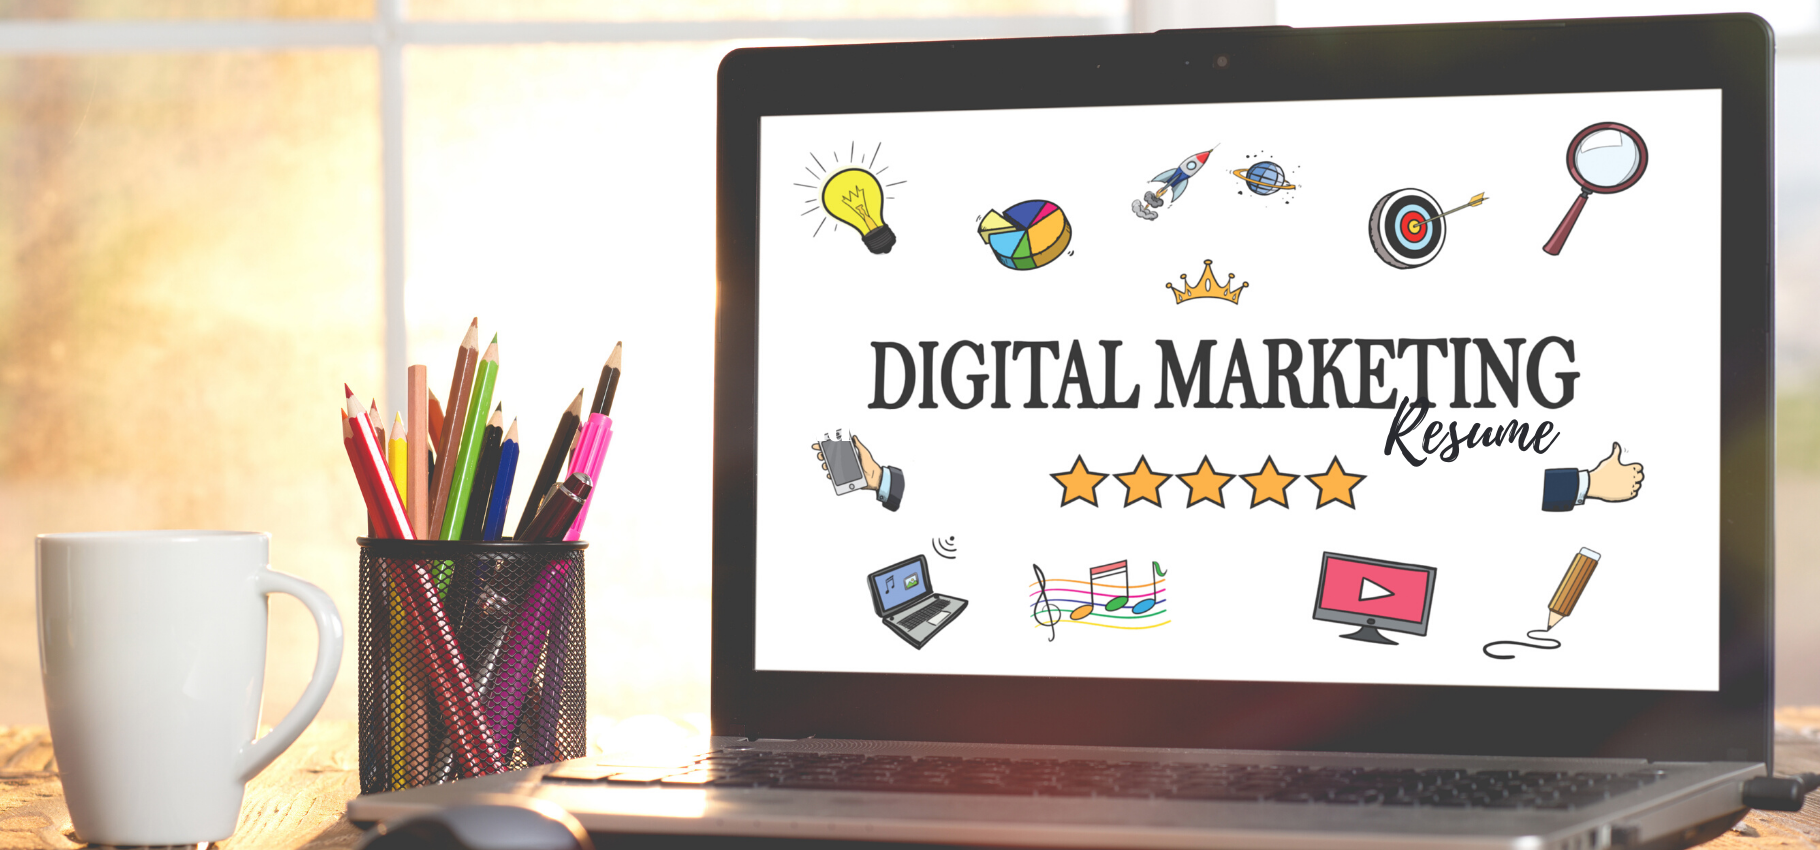 digital-marketing-resume-header